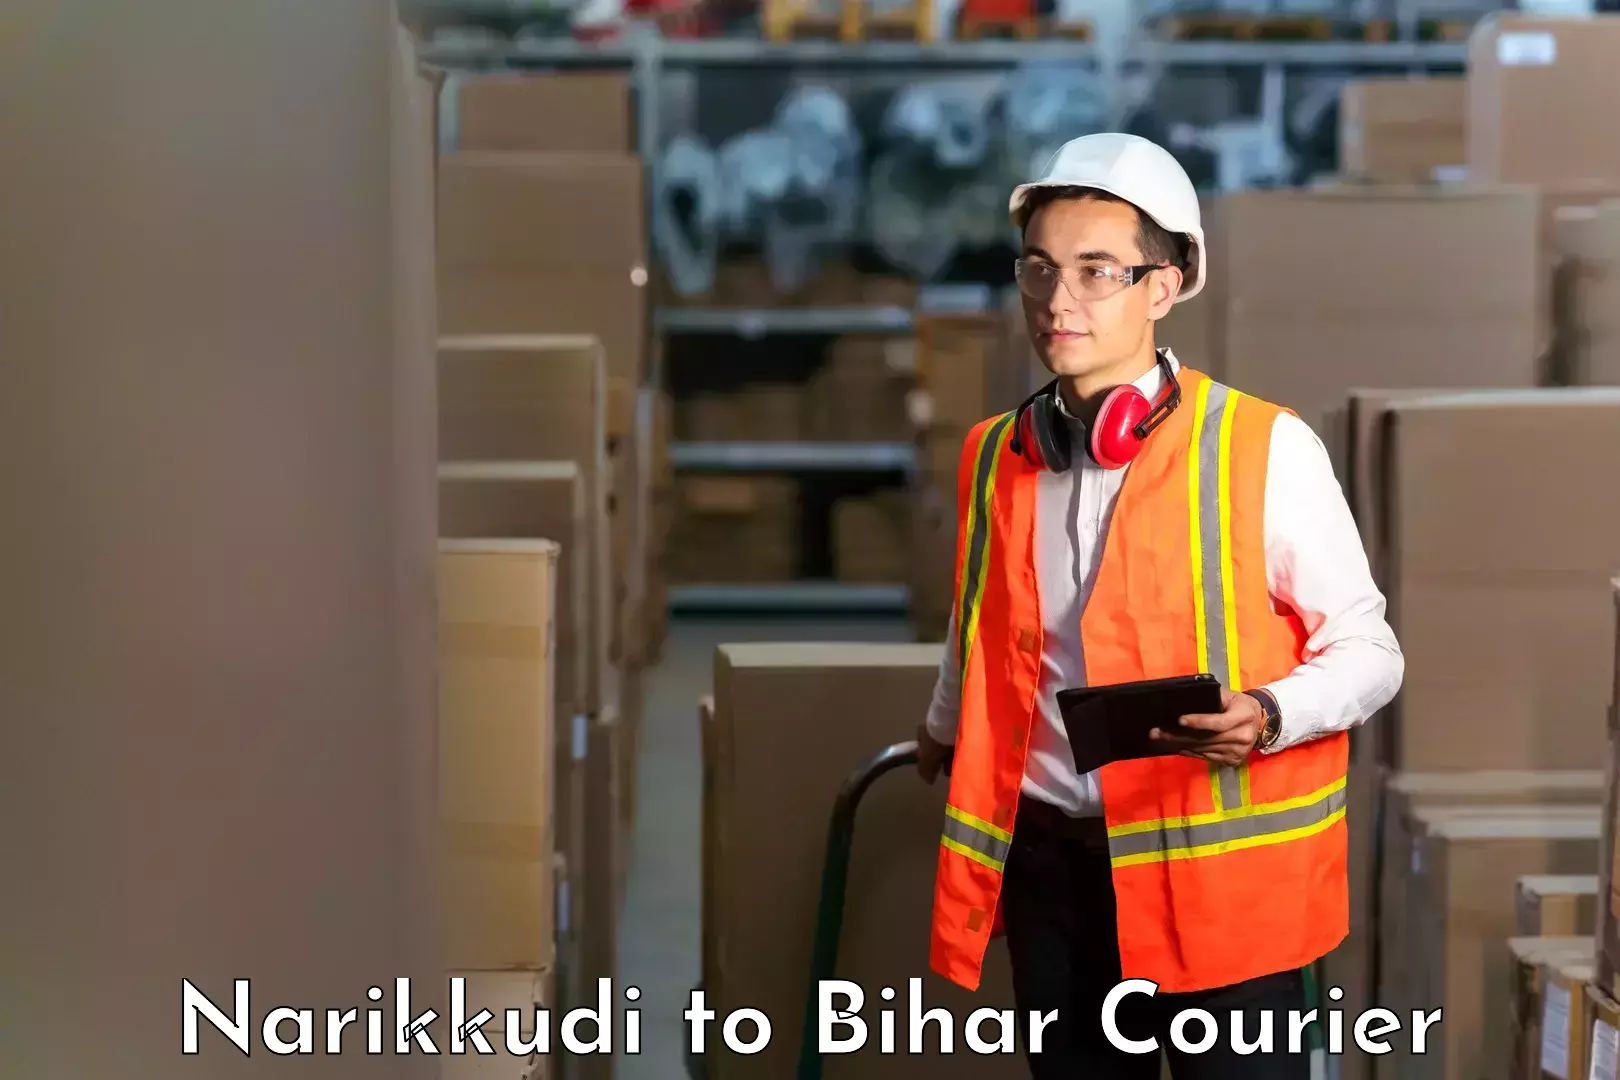 Reliable logistics providers Narikkudi to Barhiya